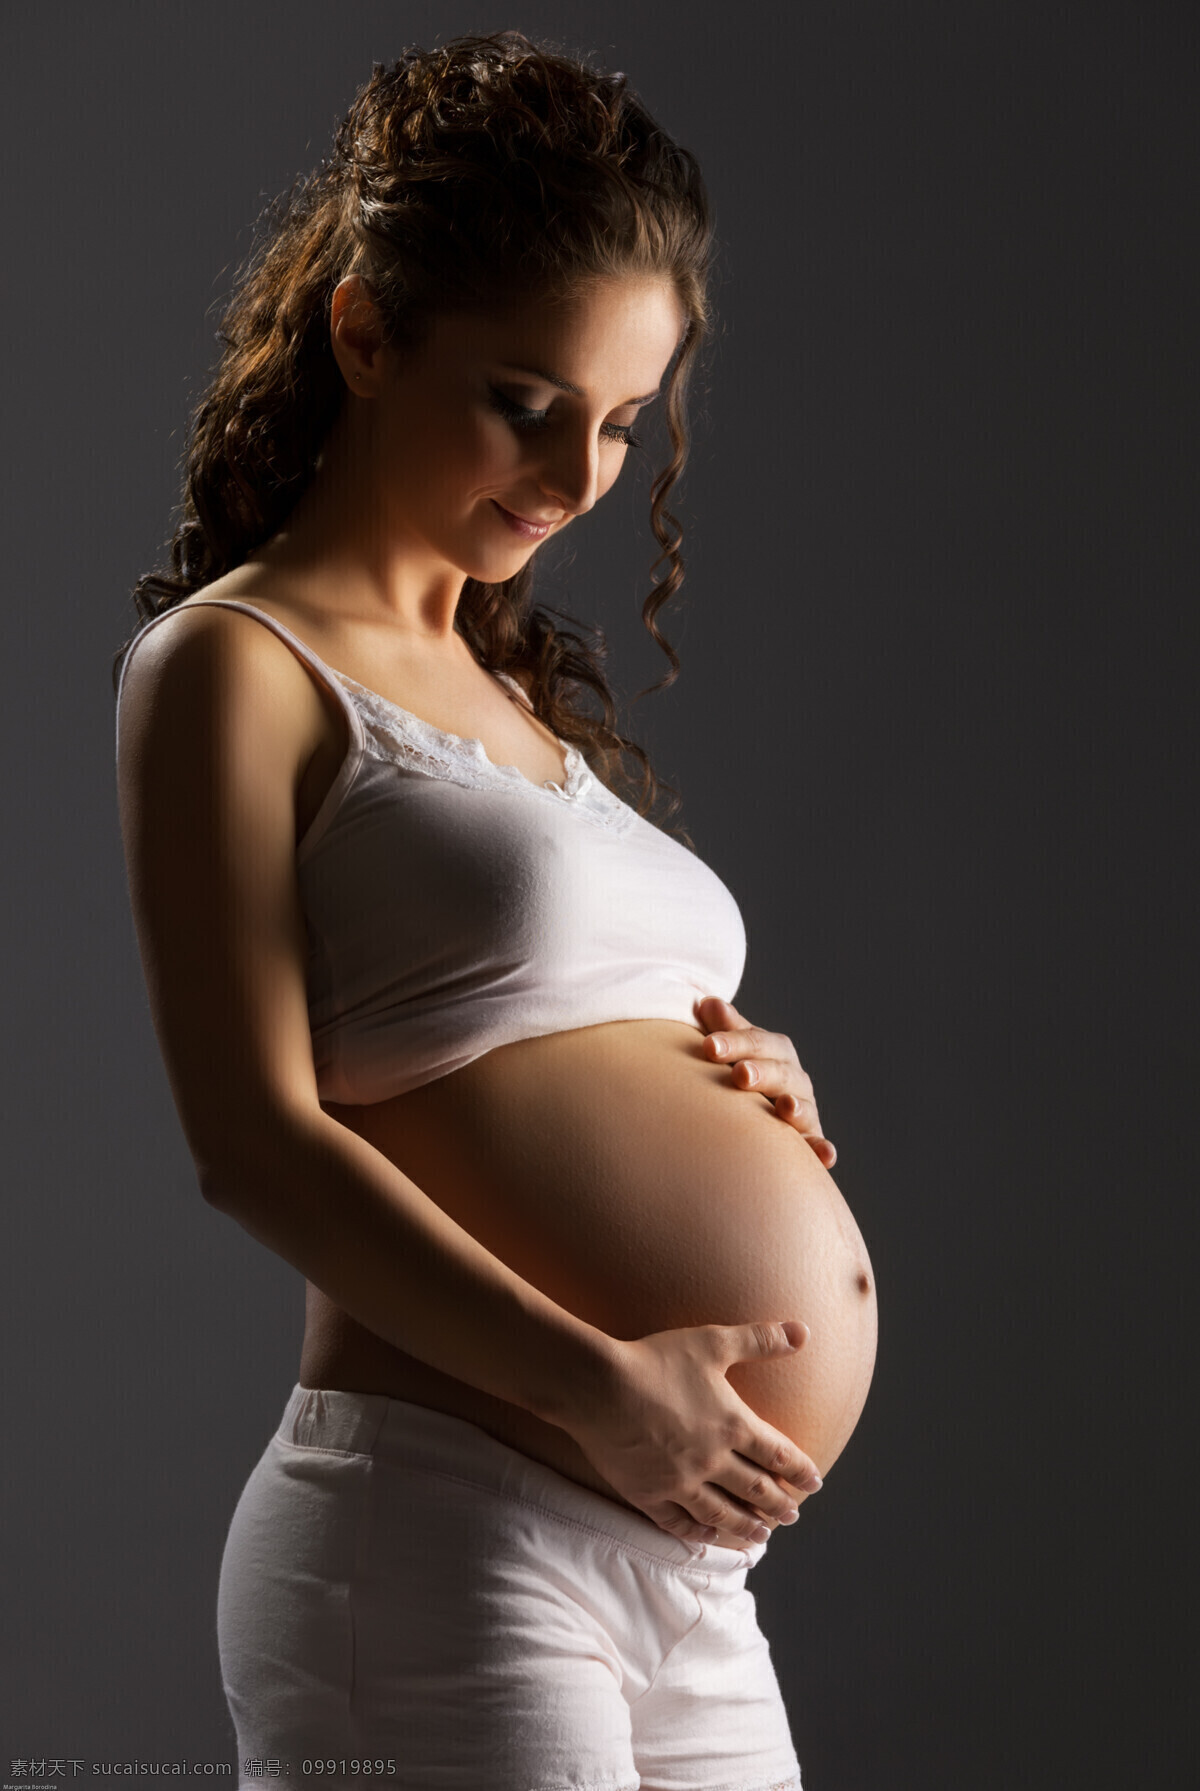 摸 肚子 孕妇 摸着肚子 长发女子 外国人 人物 美女图片 人物图片